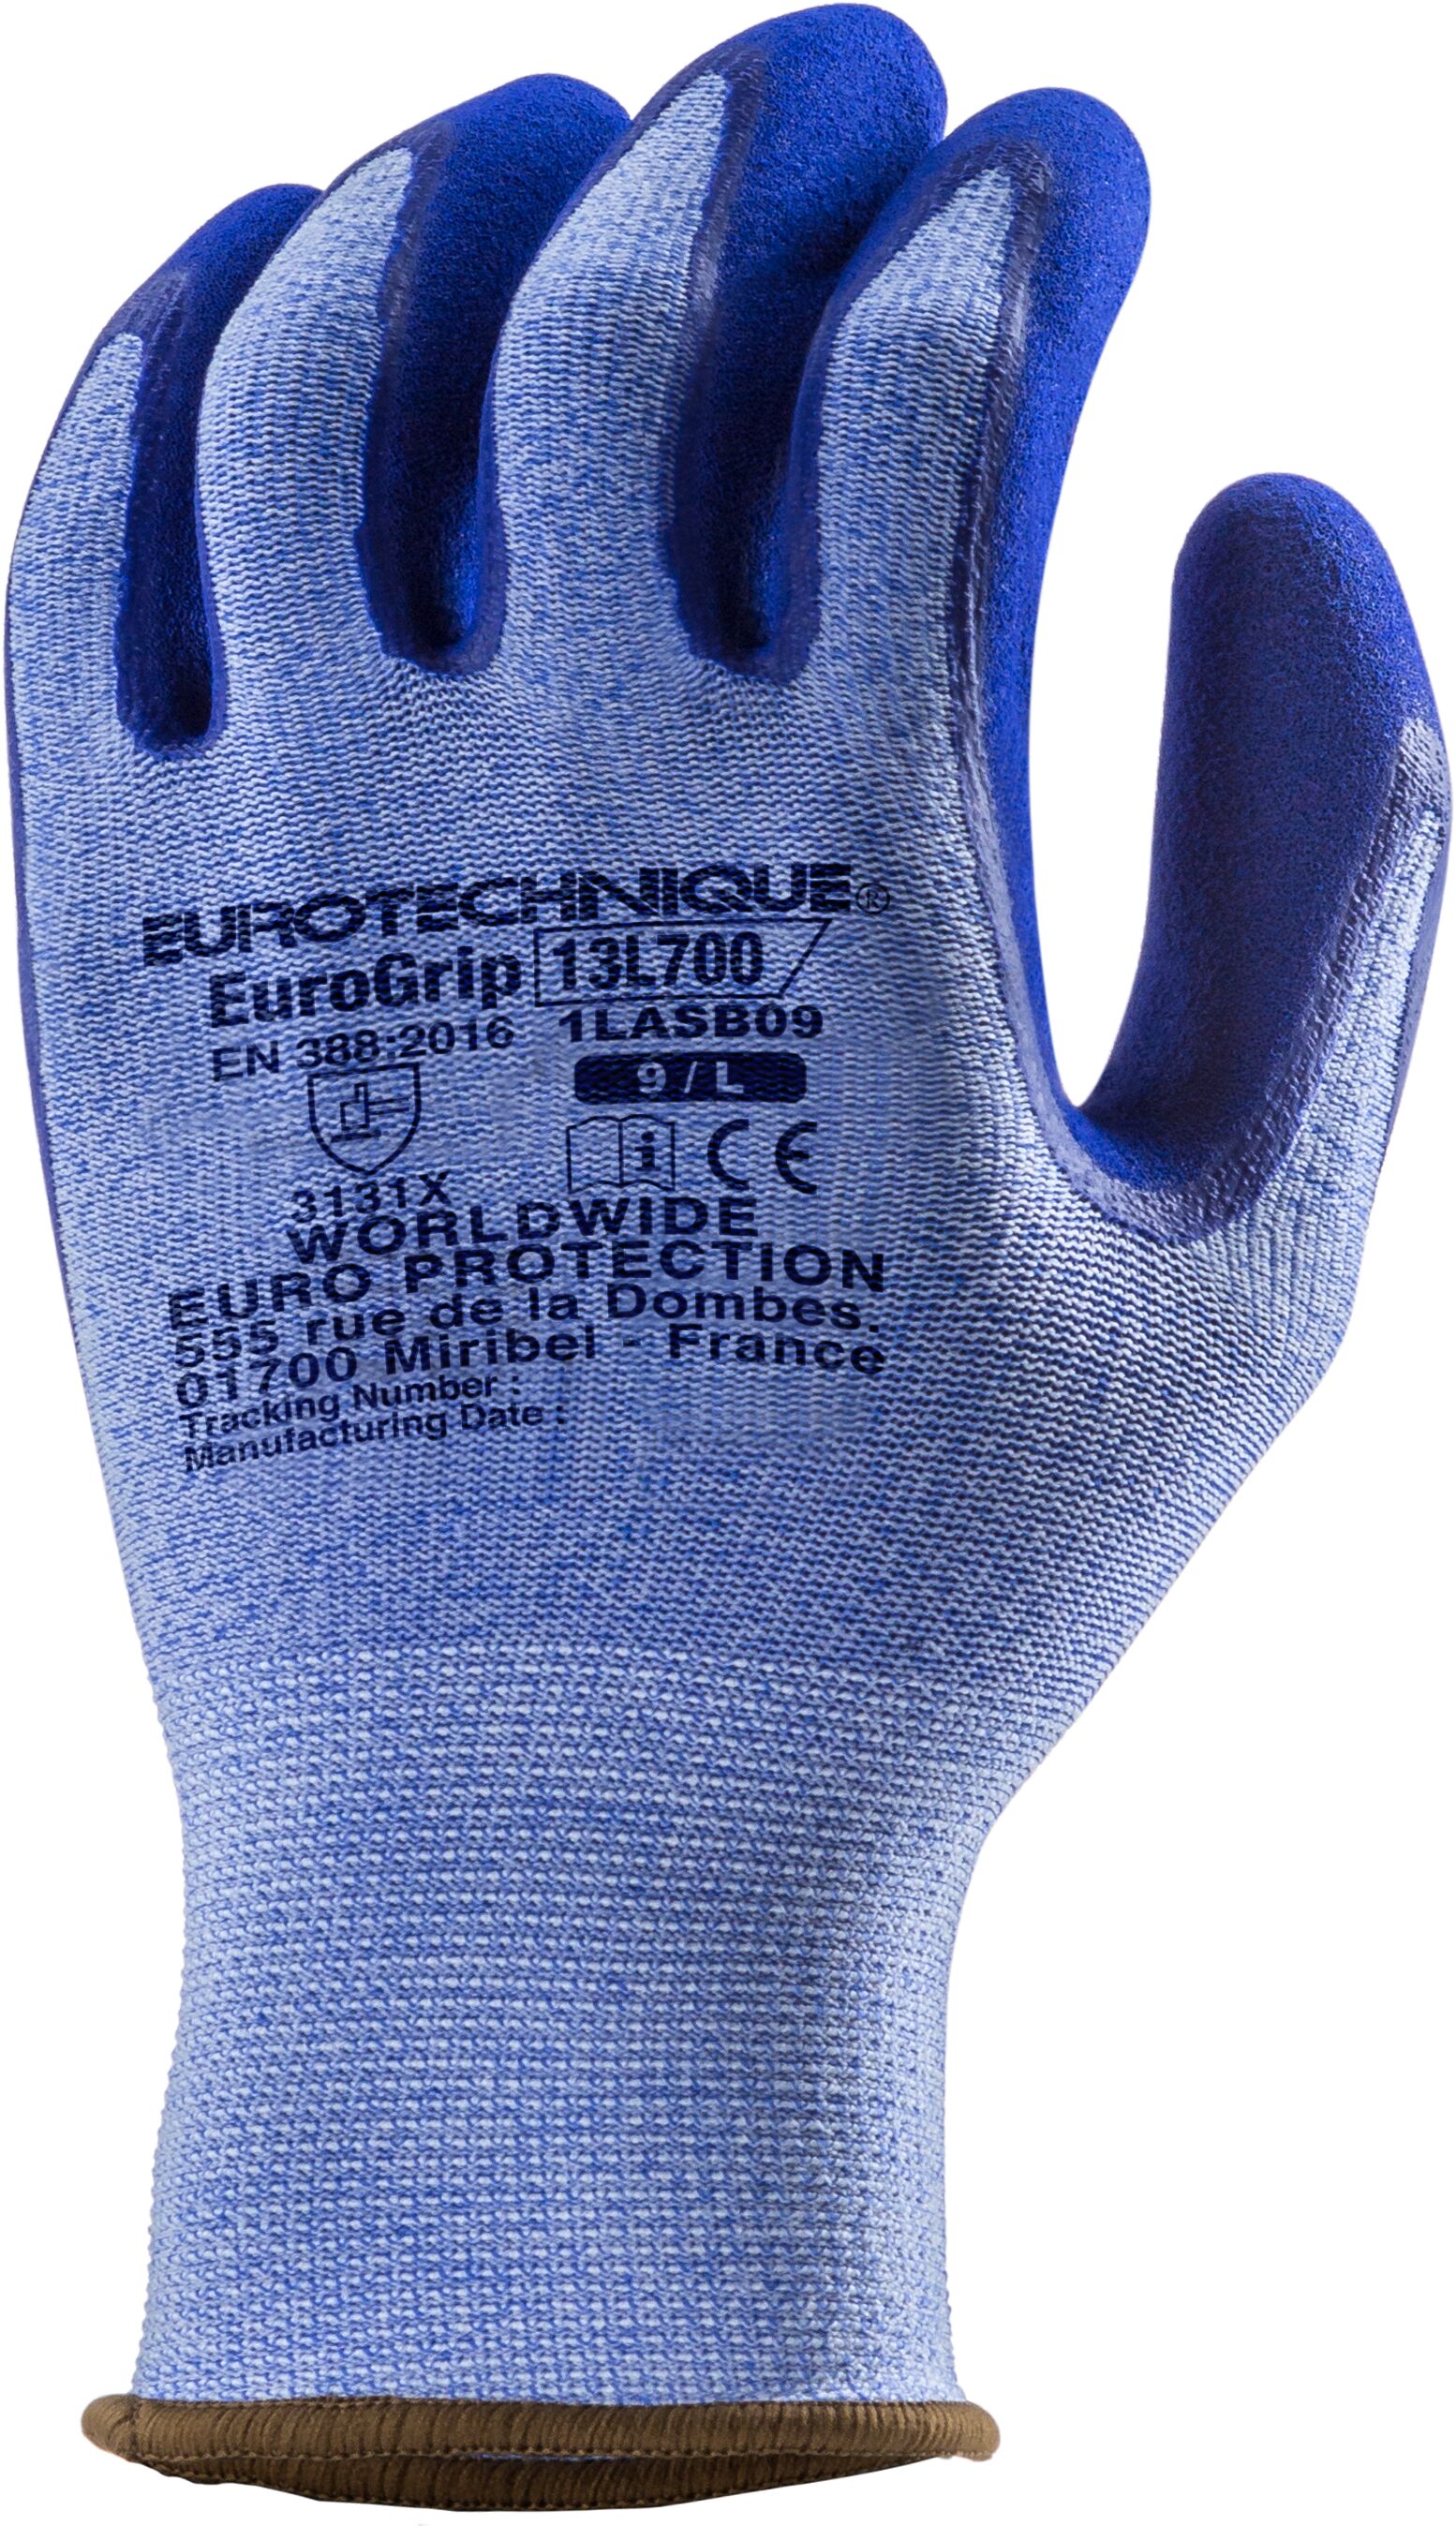 Gants Manutention EUROGRIP 13L700 en polyester et Spandex bleu - jauge 13 -  double enduction latex bleu - COVERGUARD - MisterMateriaux